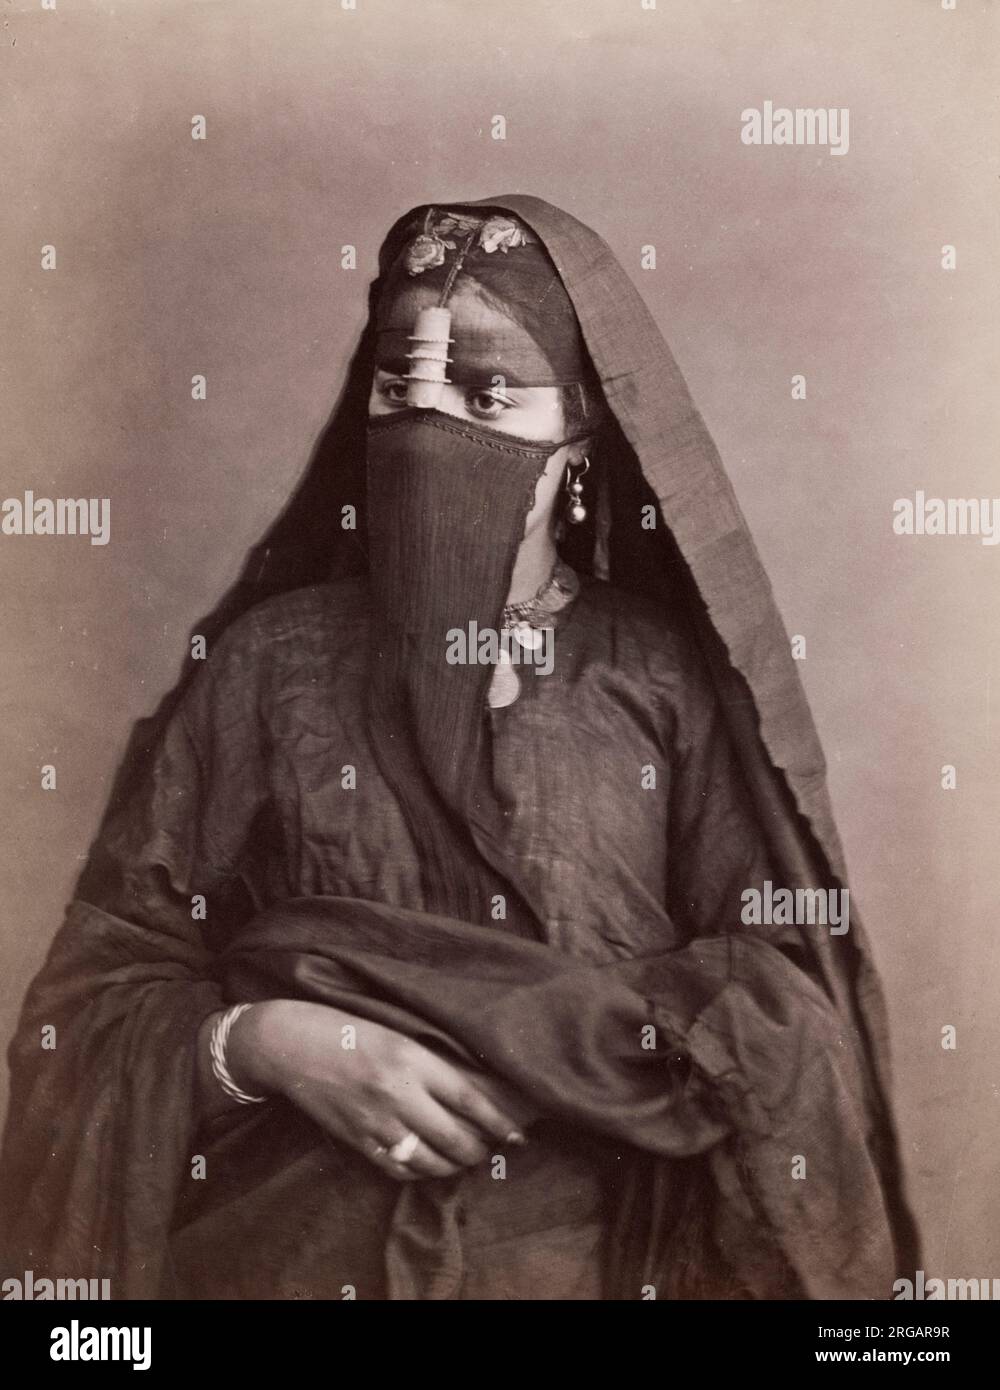 Vintage Foto aus dem 19. Jahrhundert - junge arabische Frau mit Gesichtsschleier, Ägypten. Stockfoto